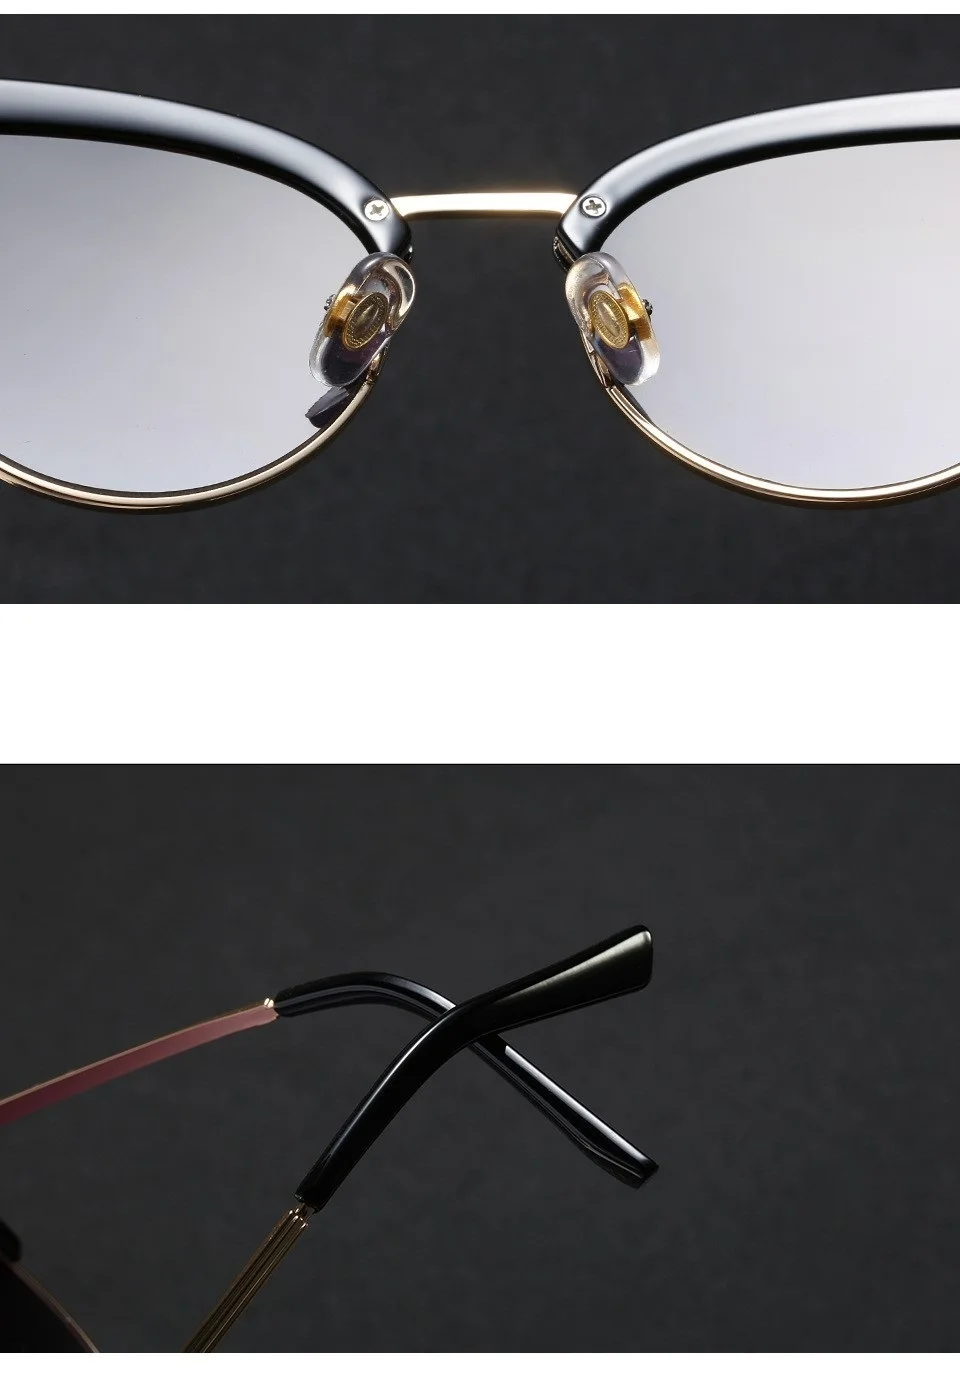 Женские солнцезащитные очки "кошачий глаз" с полуоправой, Ретро стиль, маленькая оправа, сплав, солнцезащитные очки для женщин, Chis, сексуальные, белые, черные, оттенки, бренд